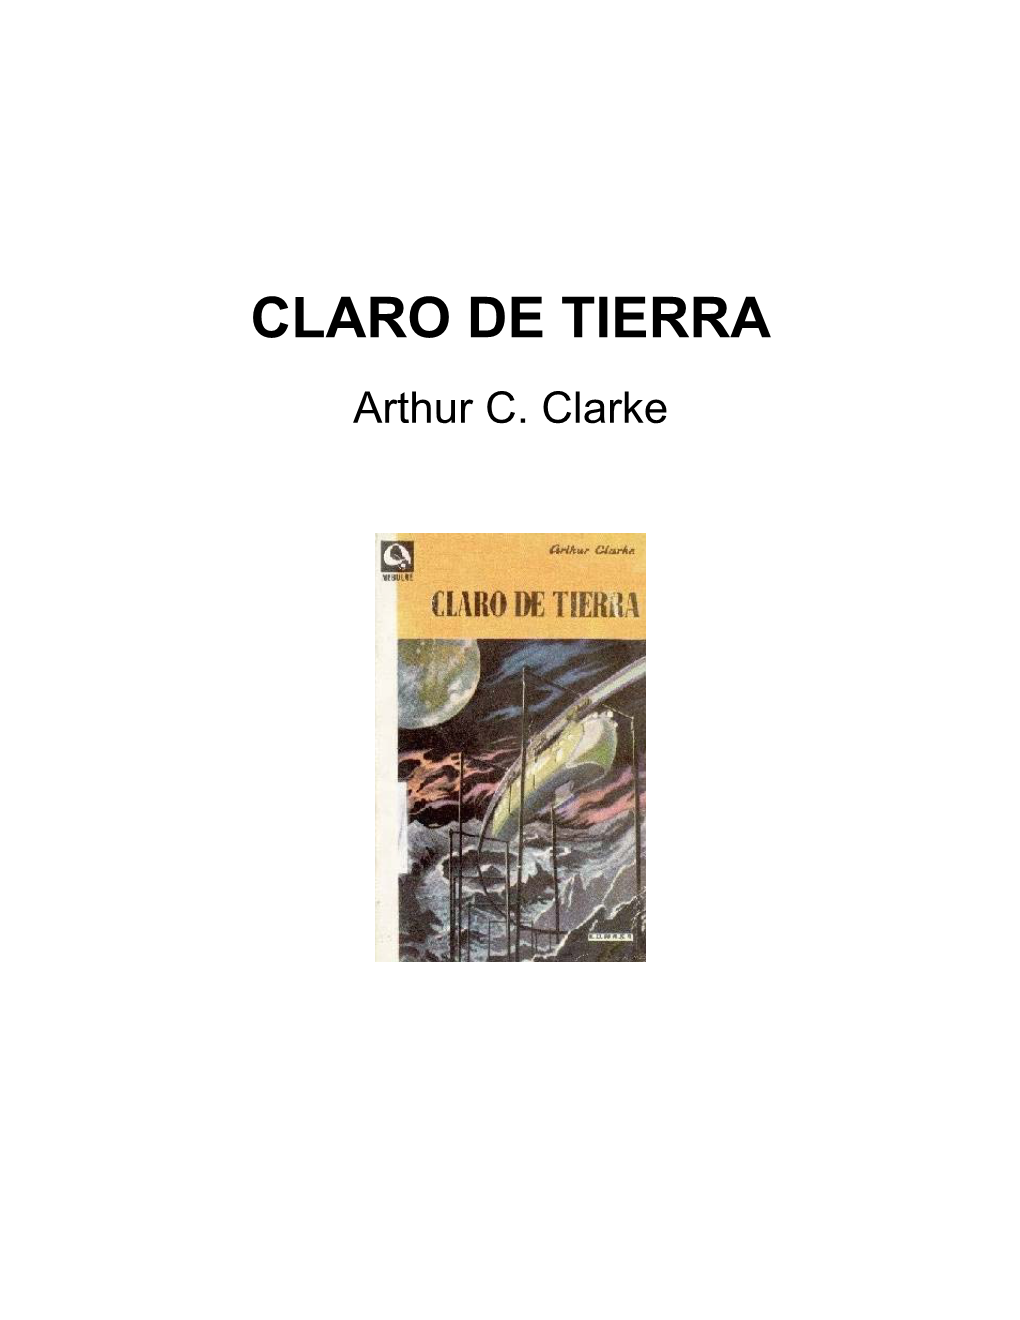 CLARO DE TIERRA Arthur C